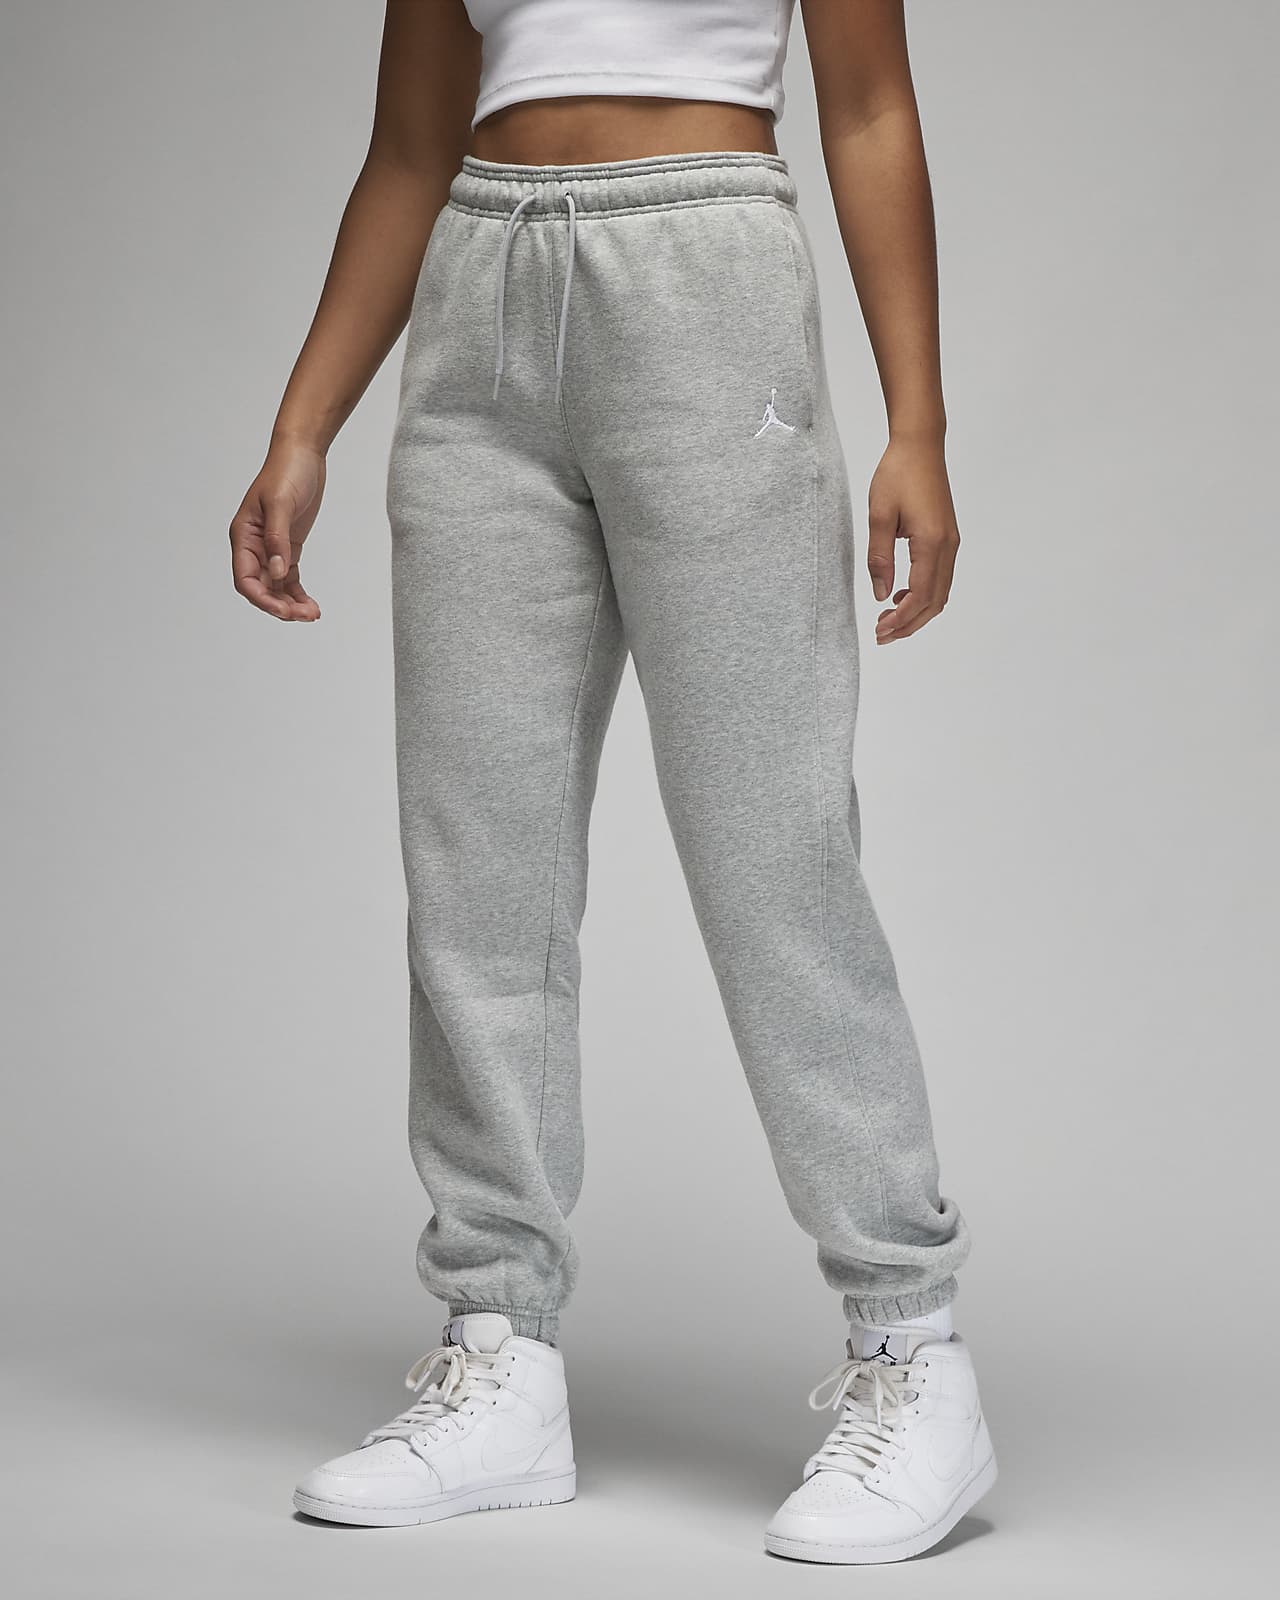 Jordan Brooklyn Fleece Women's Trousers